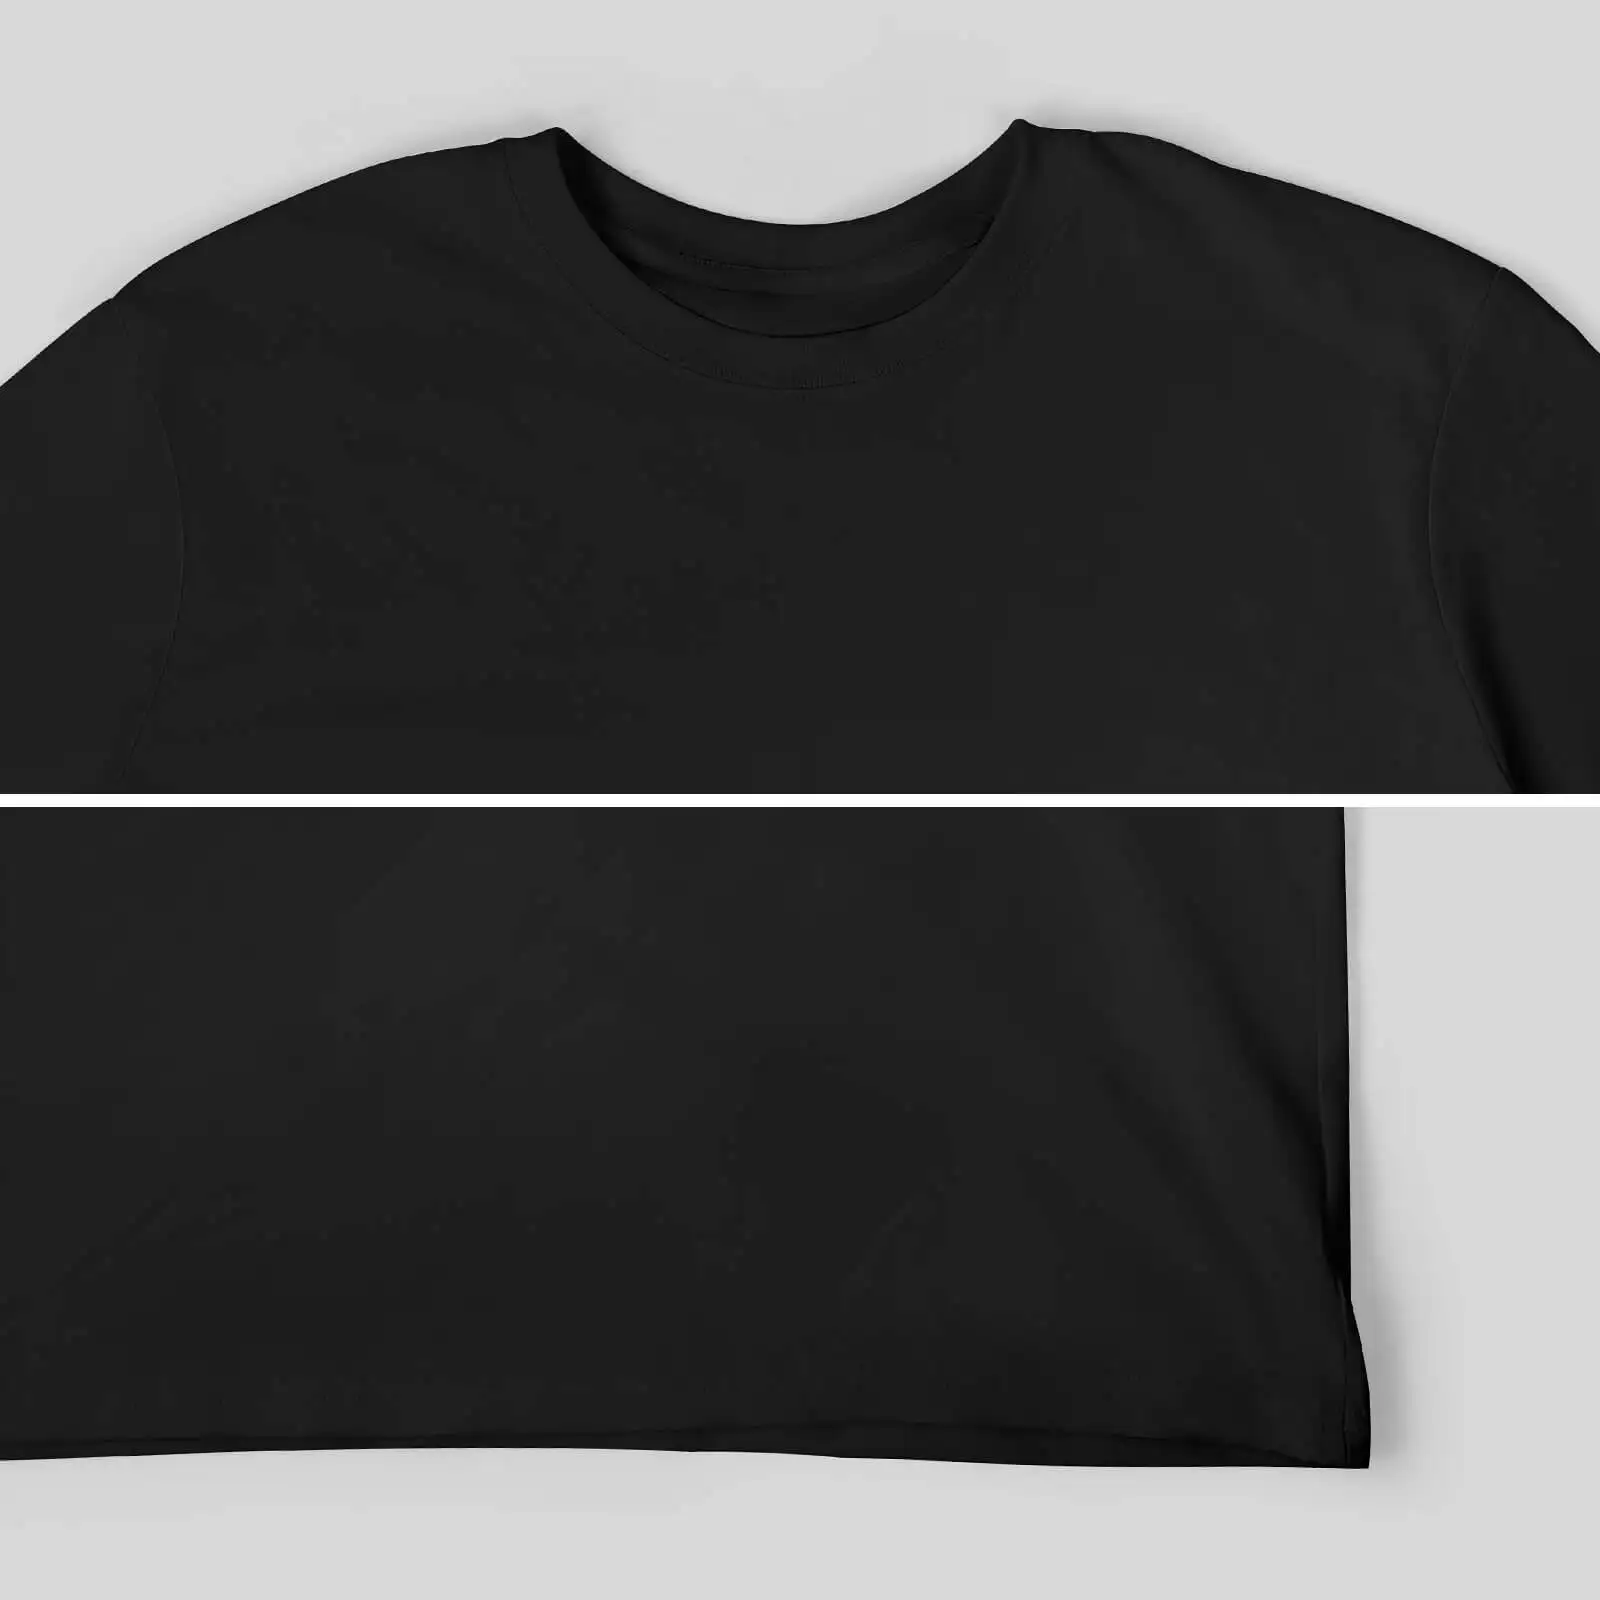 Новая футболка Suncoast Sound для выпускников, футболки с графическим рисунком, милые футболки для мужчин, упаковка - 4